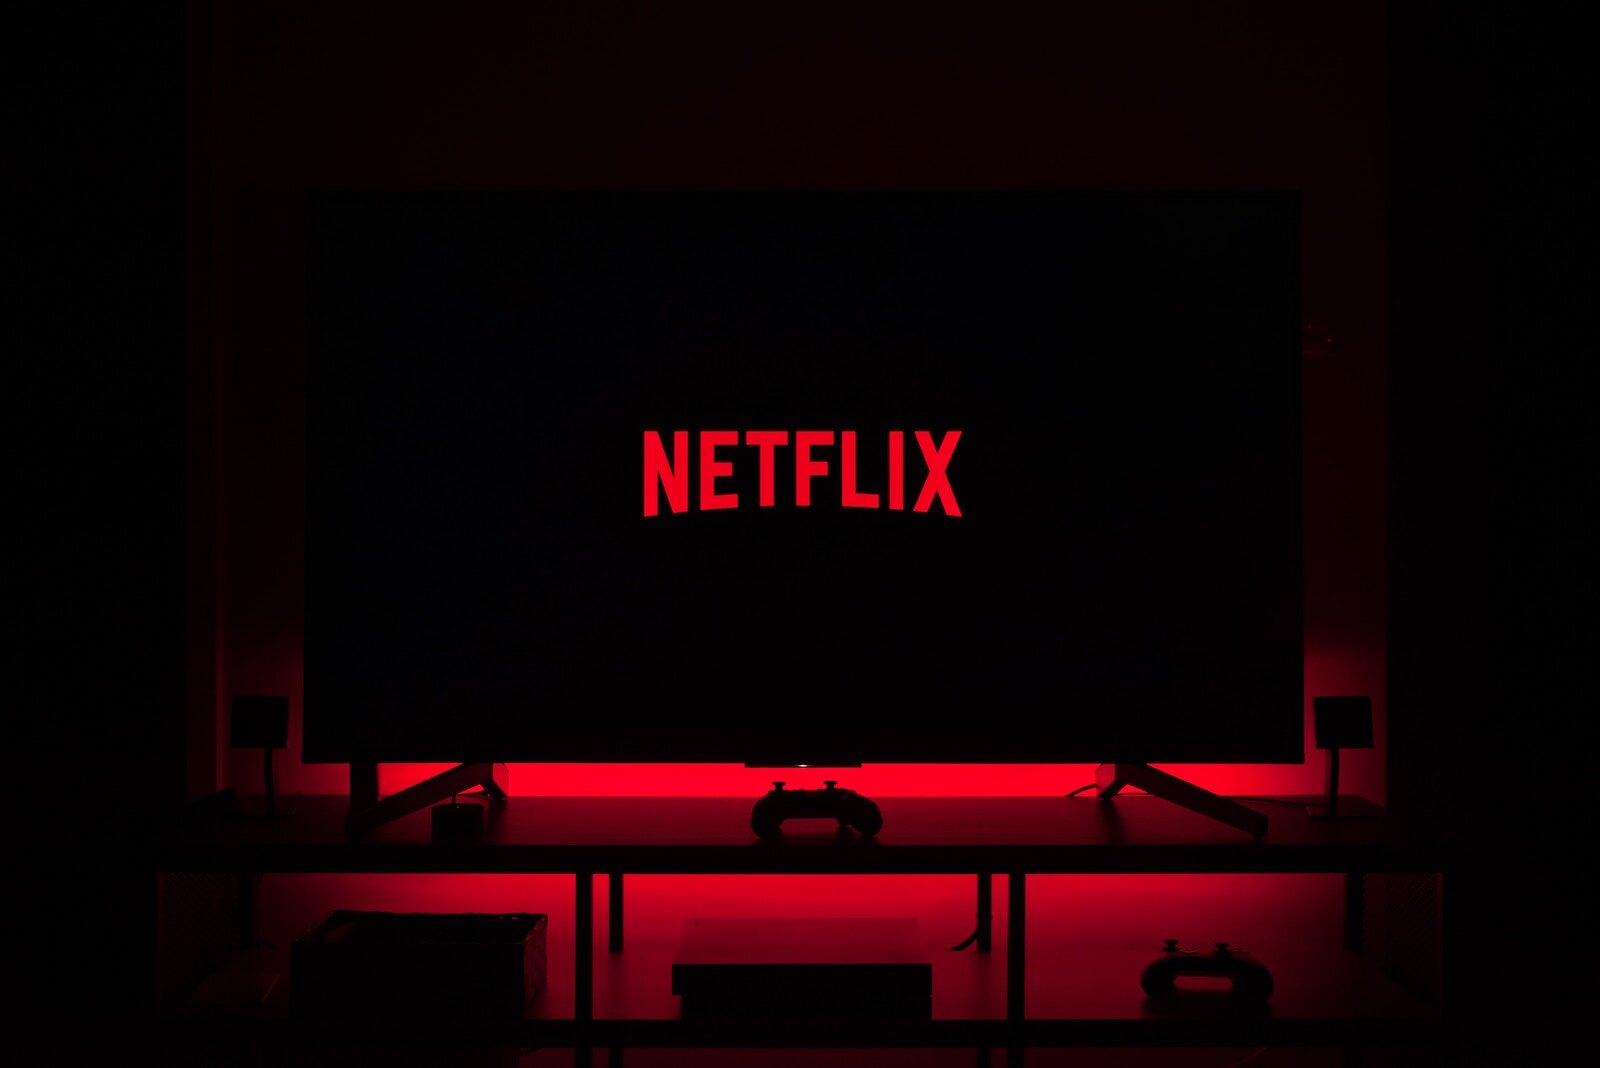 Το πρόγραμμα του Netflix με διαφημίσεις αποκτά καλύτερη ανάλυση χωρίς επιπλέον κόστος